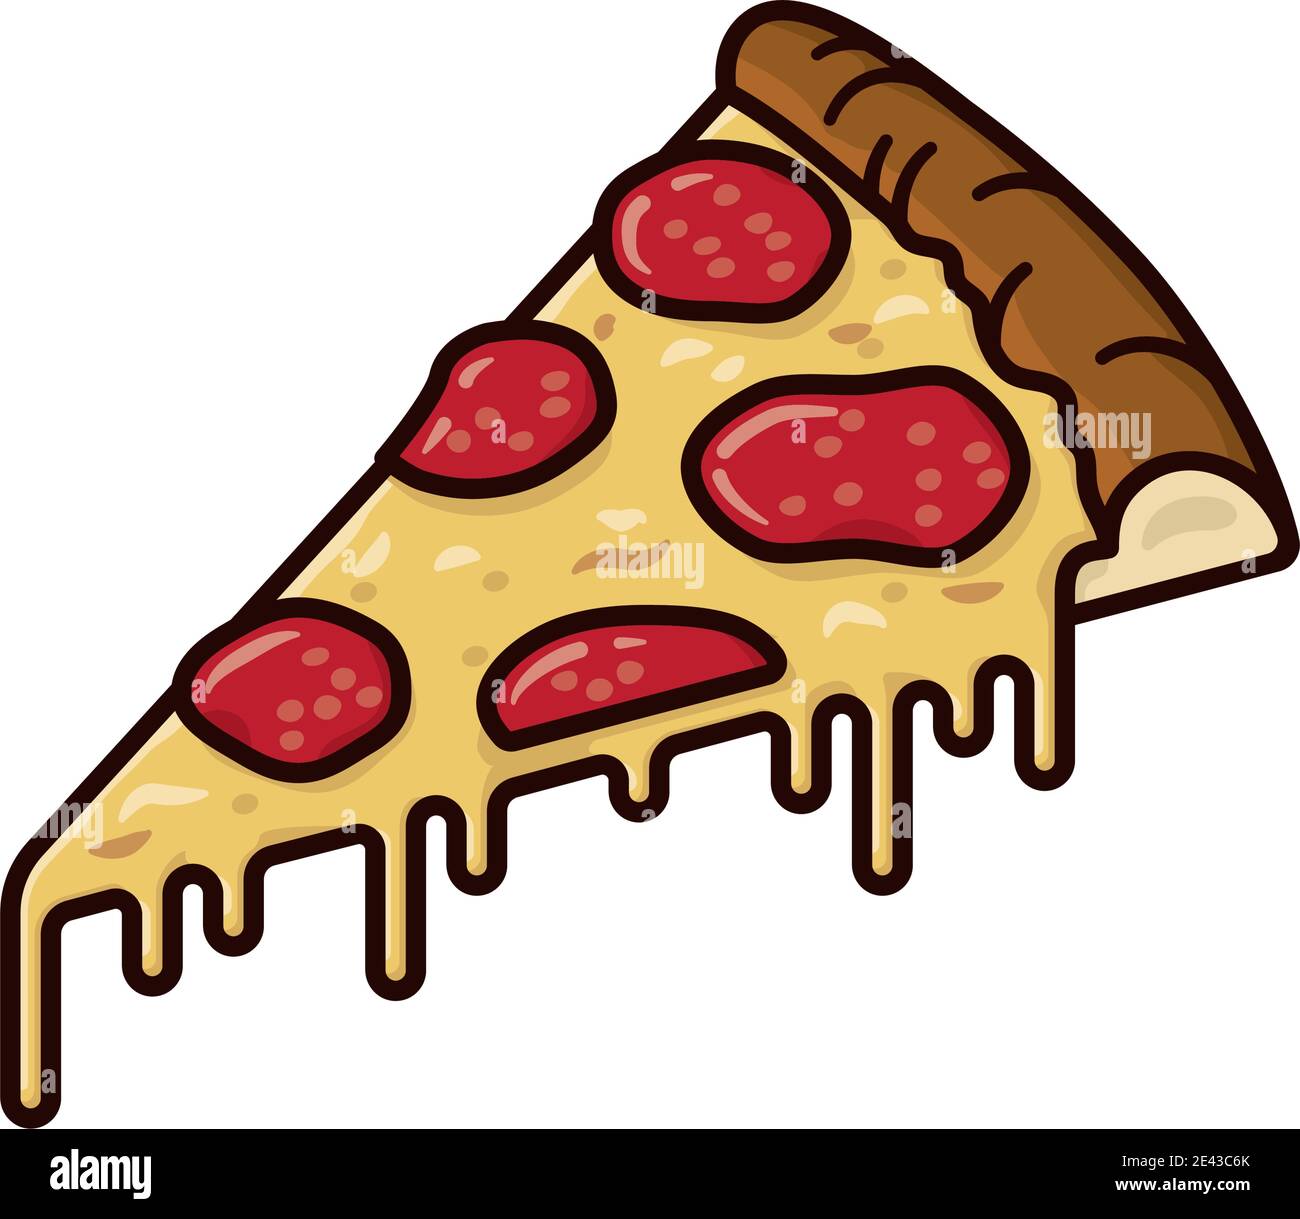 Stück Pepperoni Pizza isolierte Vektor-illustrationvfor Pepperoni Pizza Day am 20. September. Stock Vektor